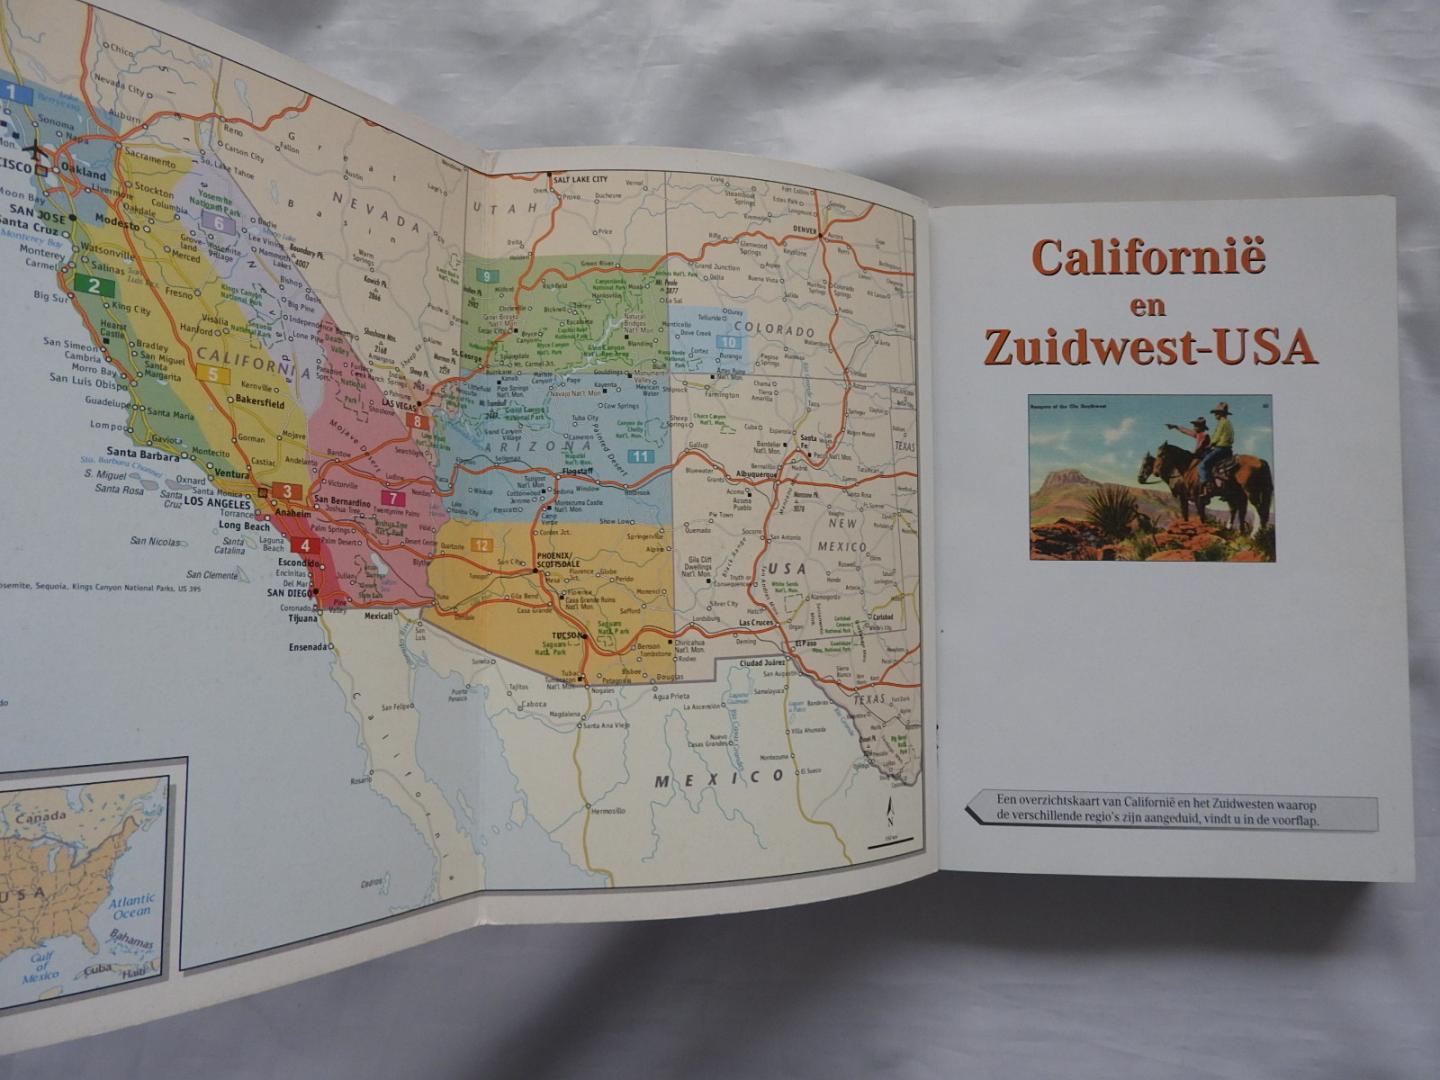 Schmidt-Brummer, H. - Lannoo's blauwe reisgids : Zuidwest-USA en Californië